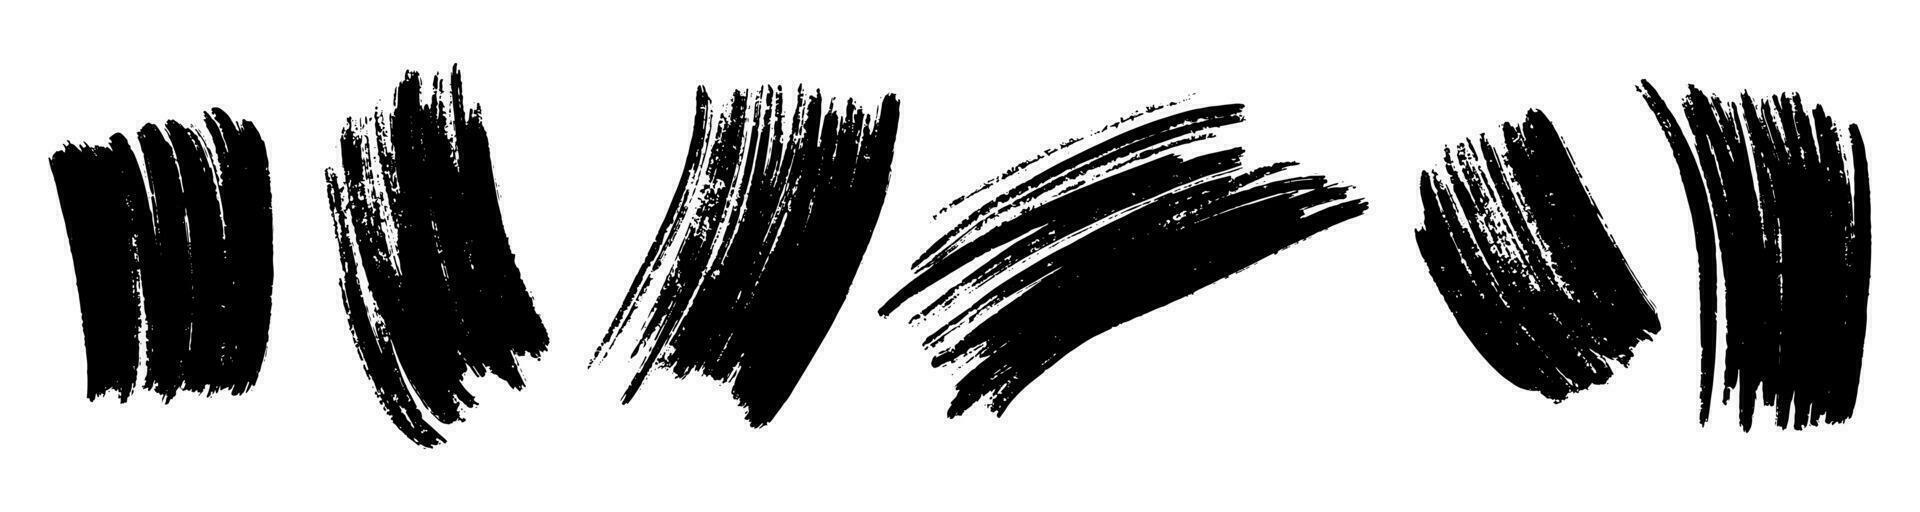 einstellen von Tinte Bürste Schlaganfälle, Bürsten, Linien, schwarz malen, schmuddelig. Hand gezeichnet Grafik Element isoliert auf Weiß Hintergrund. vektor